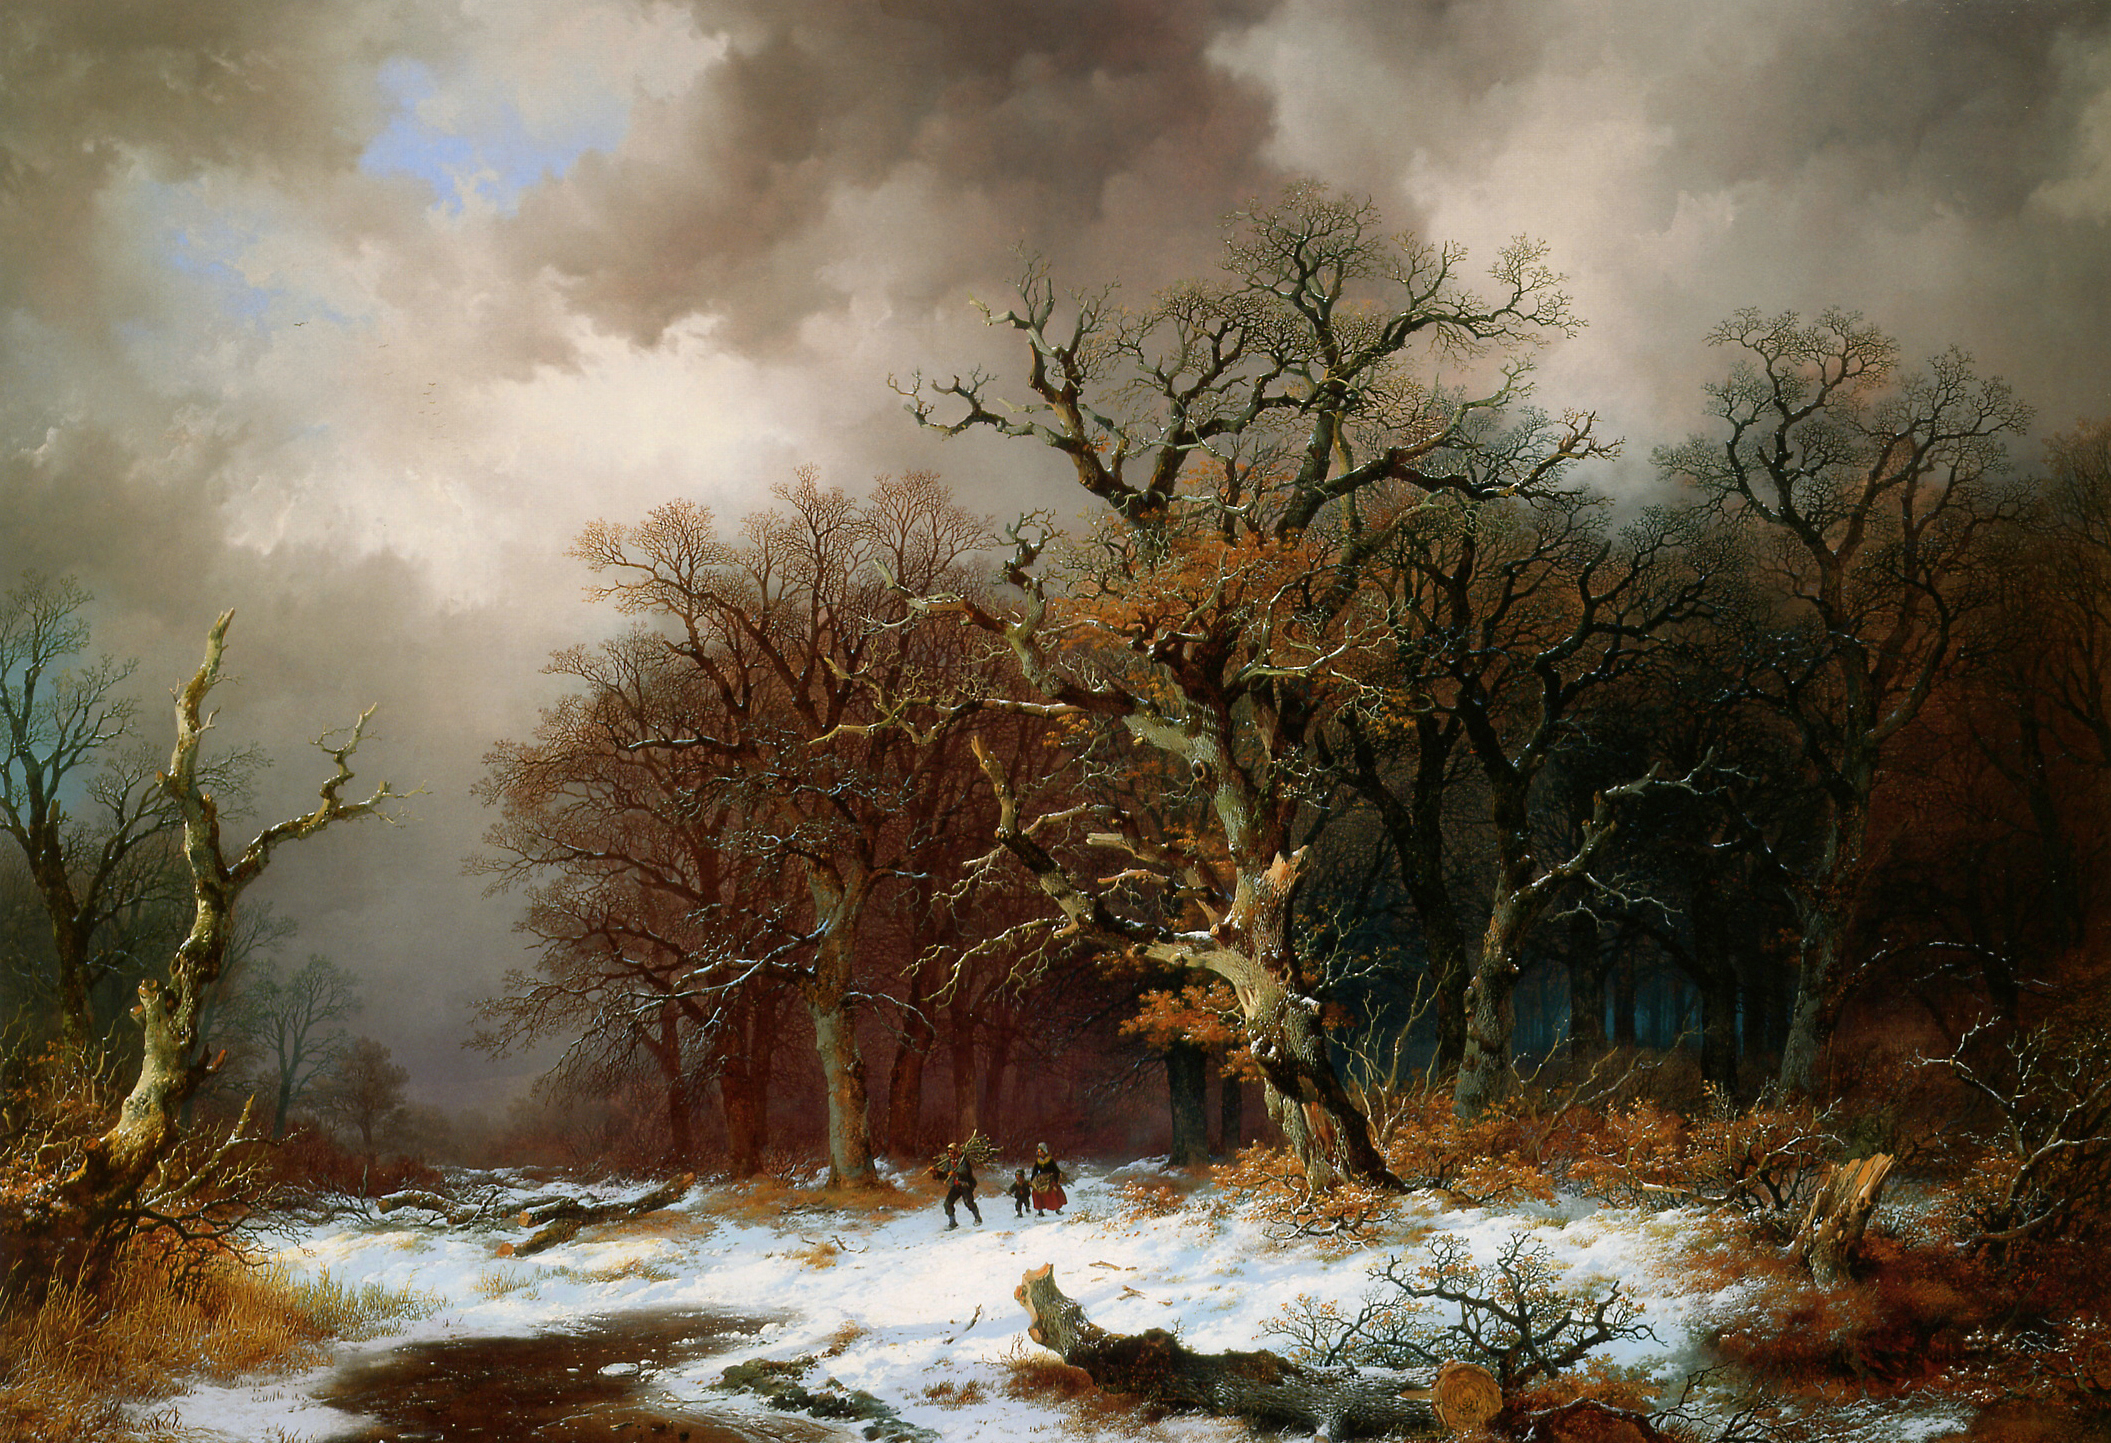 Remigius van Haanen (1812-1894) - Faggot Gatherers in Winter Landscape (Unknown)